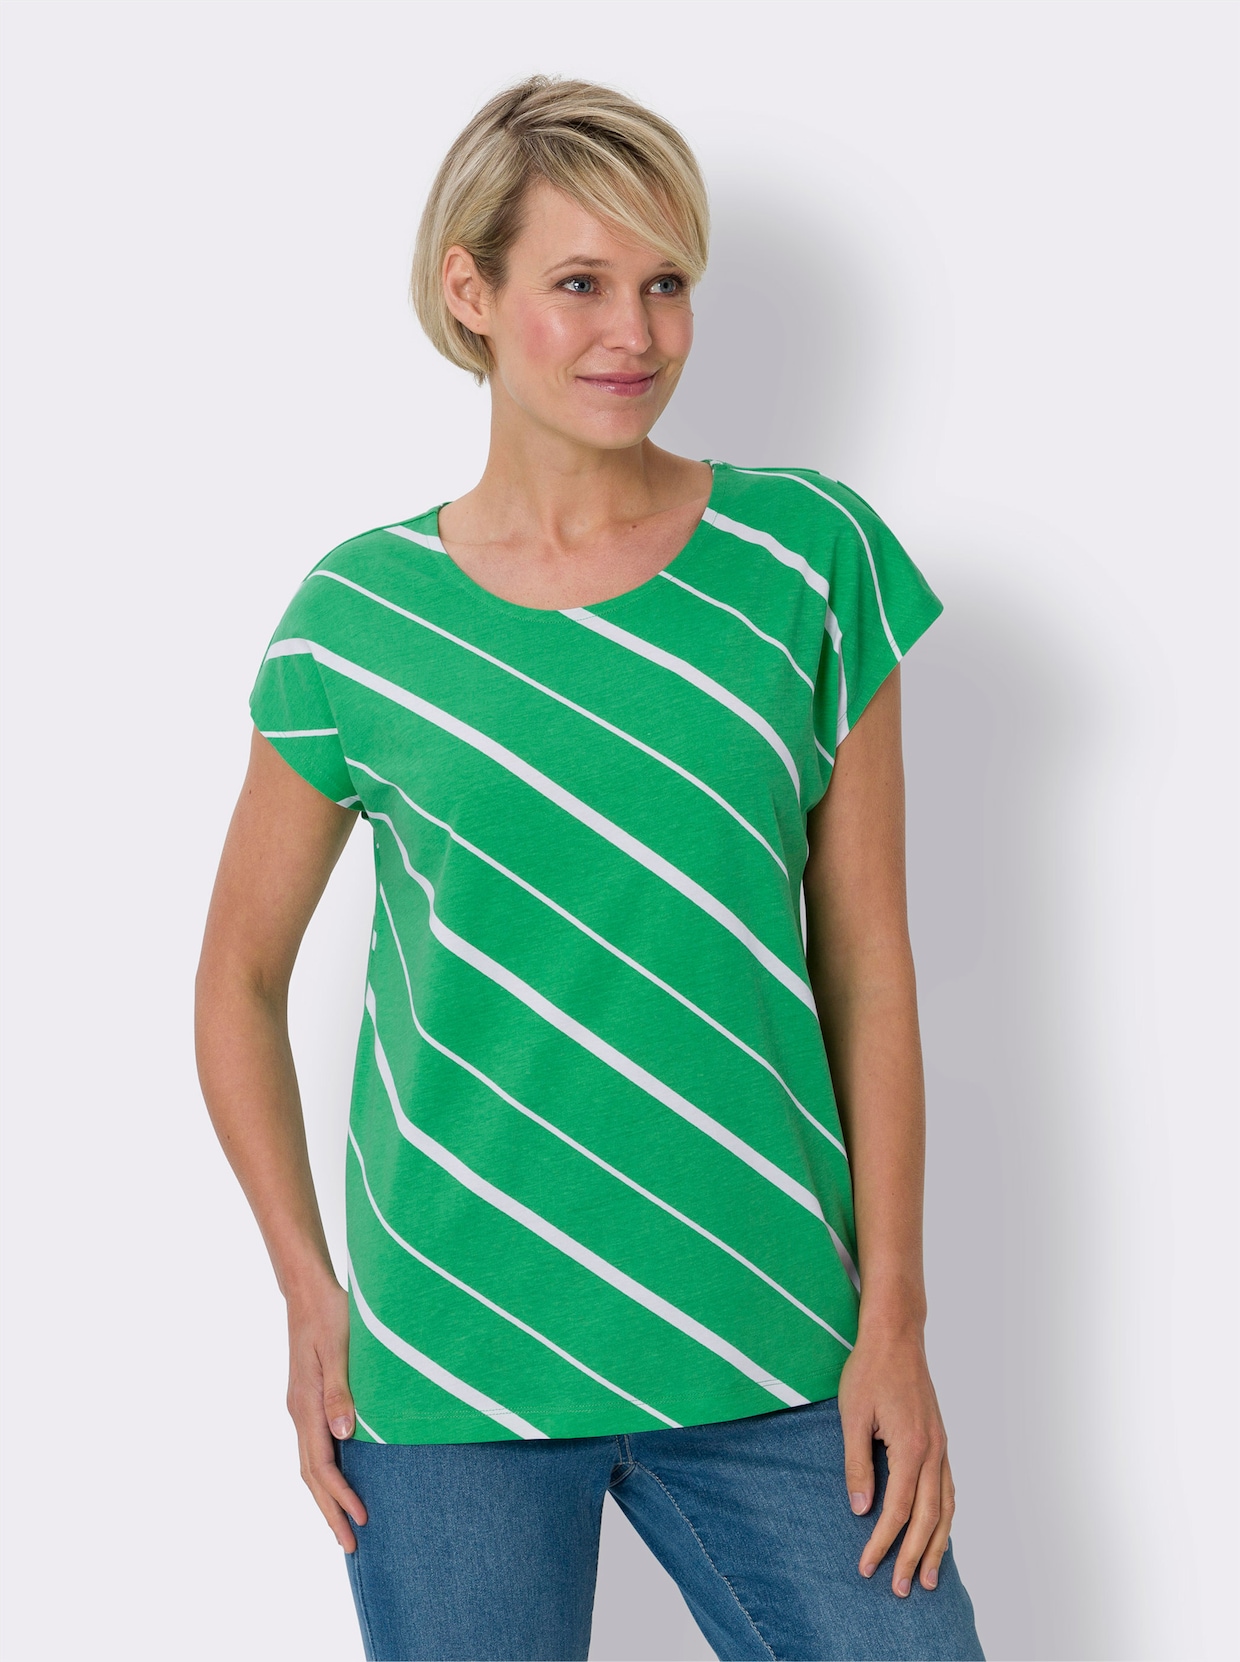 Tričko s krátkým rukávem - trávově zelená-bílá-proužek